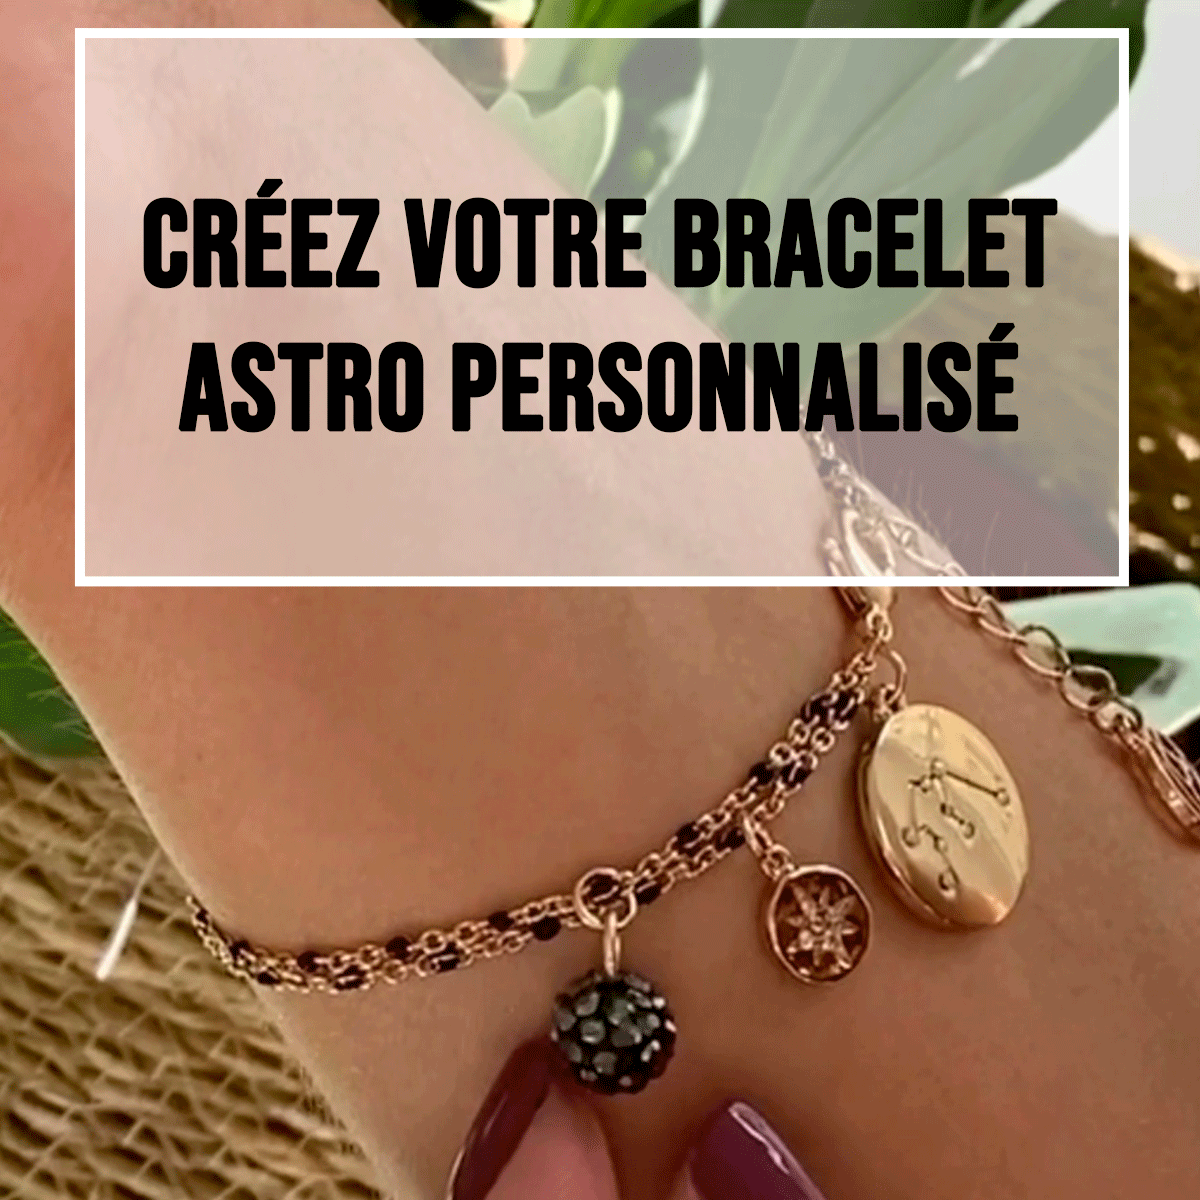 Créez votre bracelet astro personnalisé